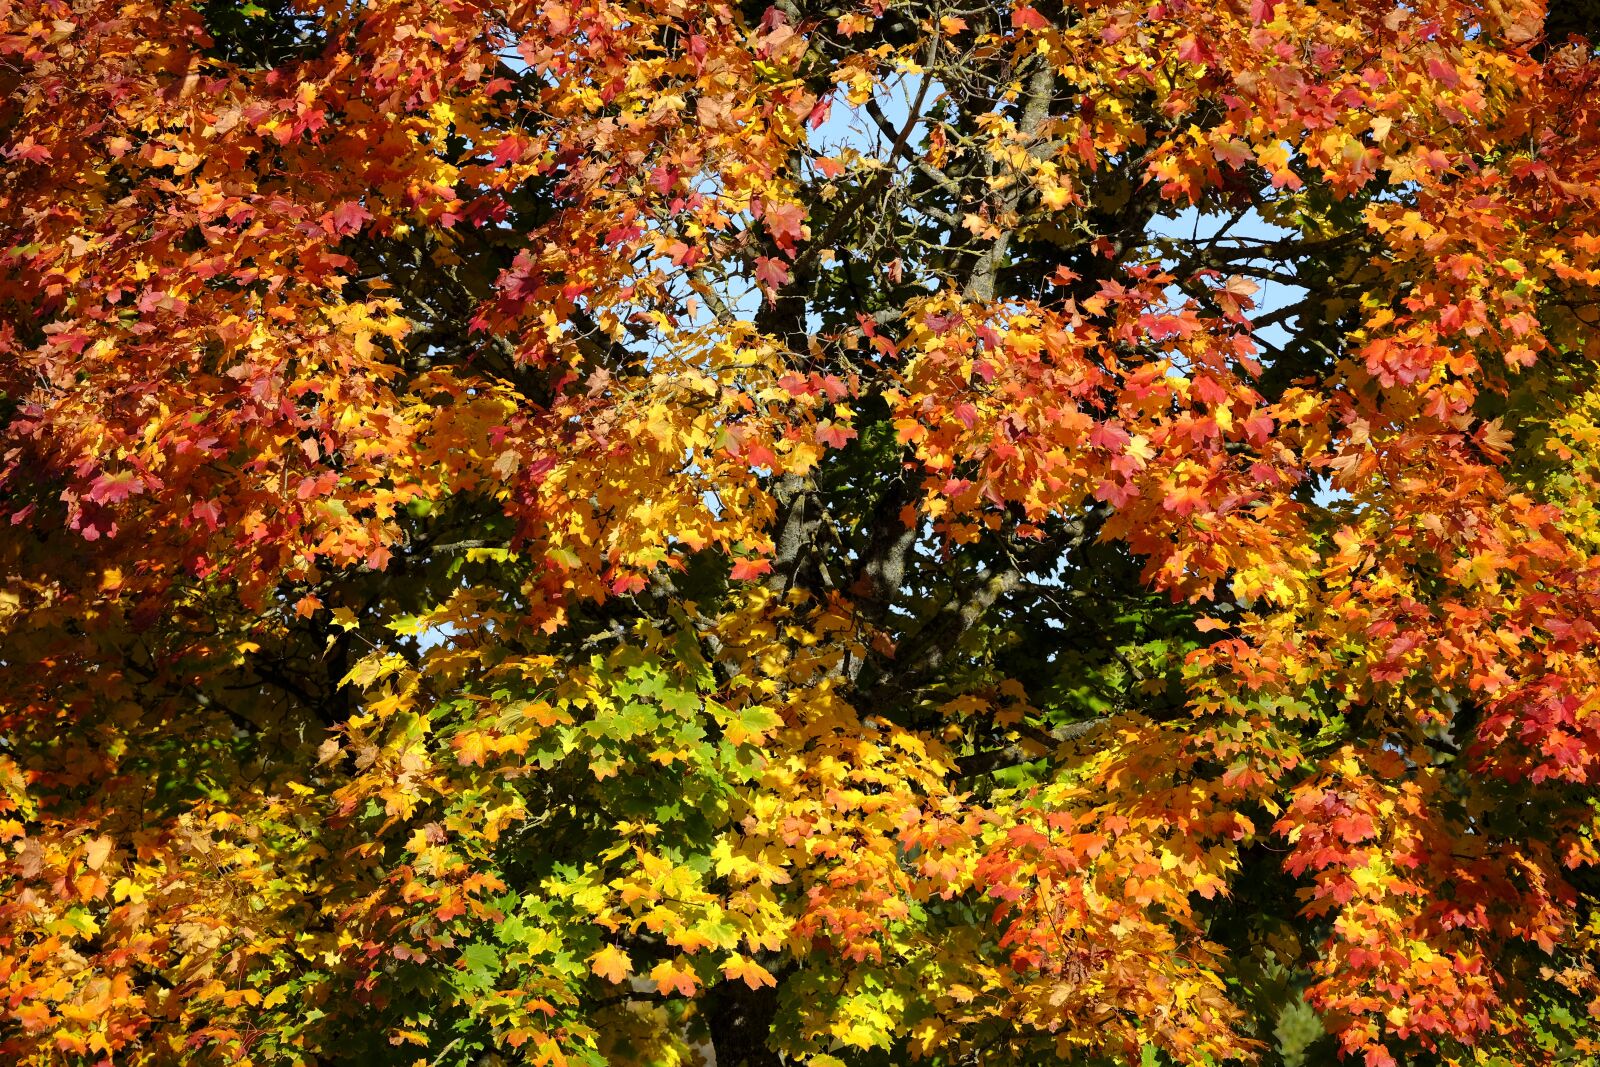 Fujifilm XF 50-140mm F2.8 R LM OIS WR sample photo. Autumn, leaves, fall foliage photography